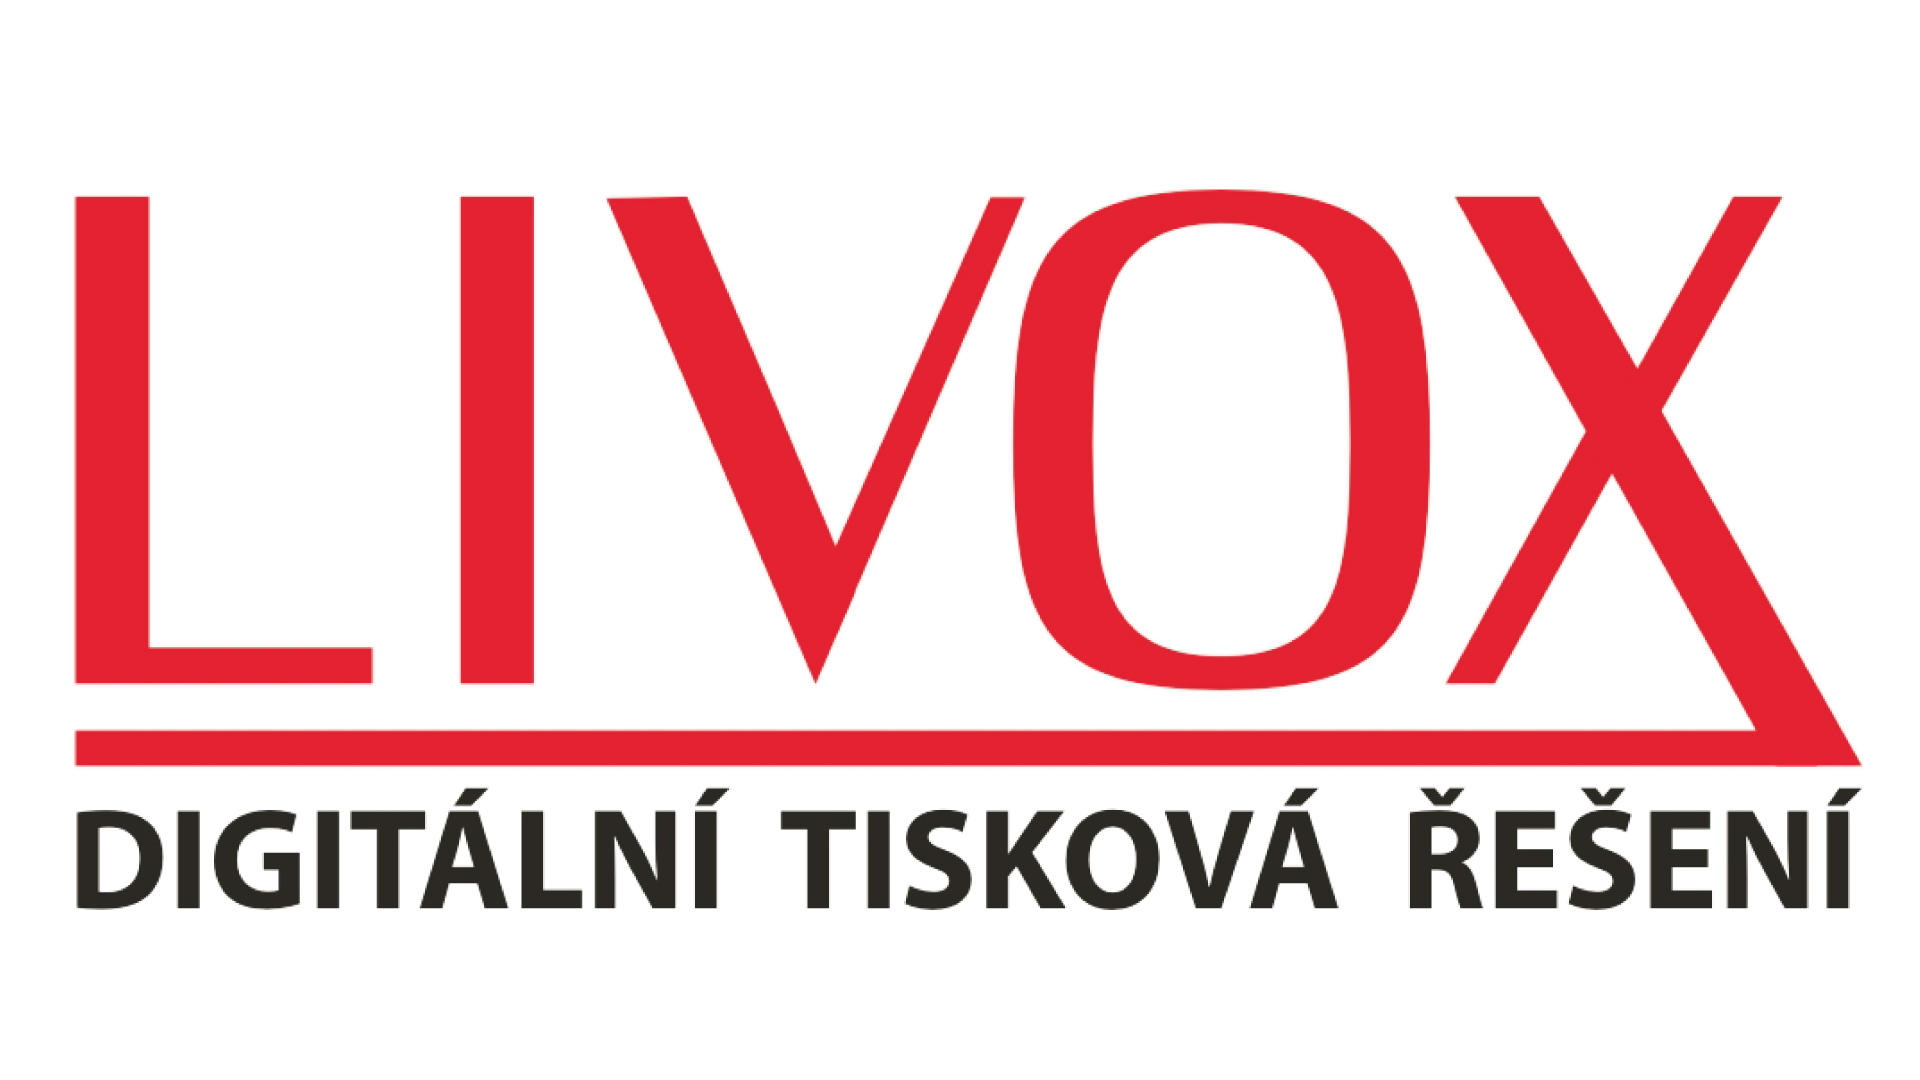 Livox